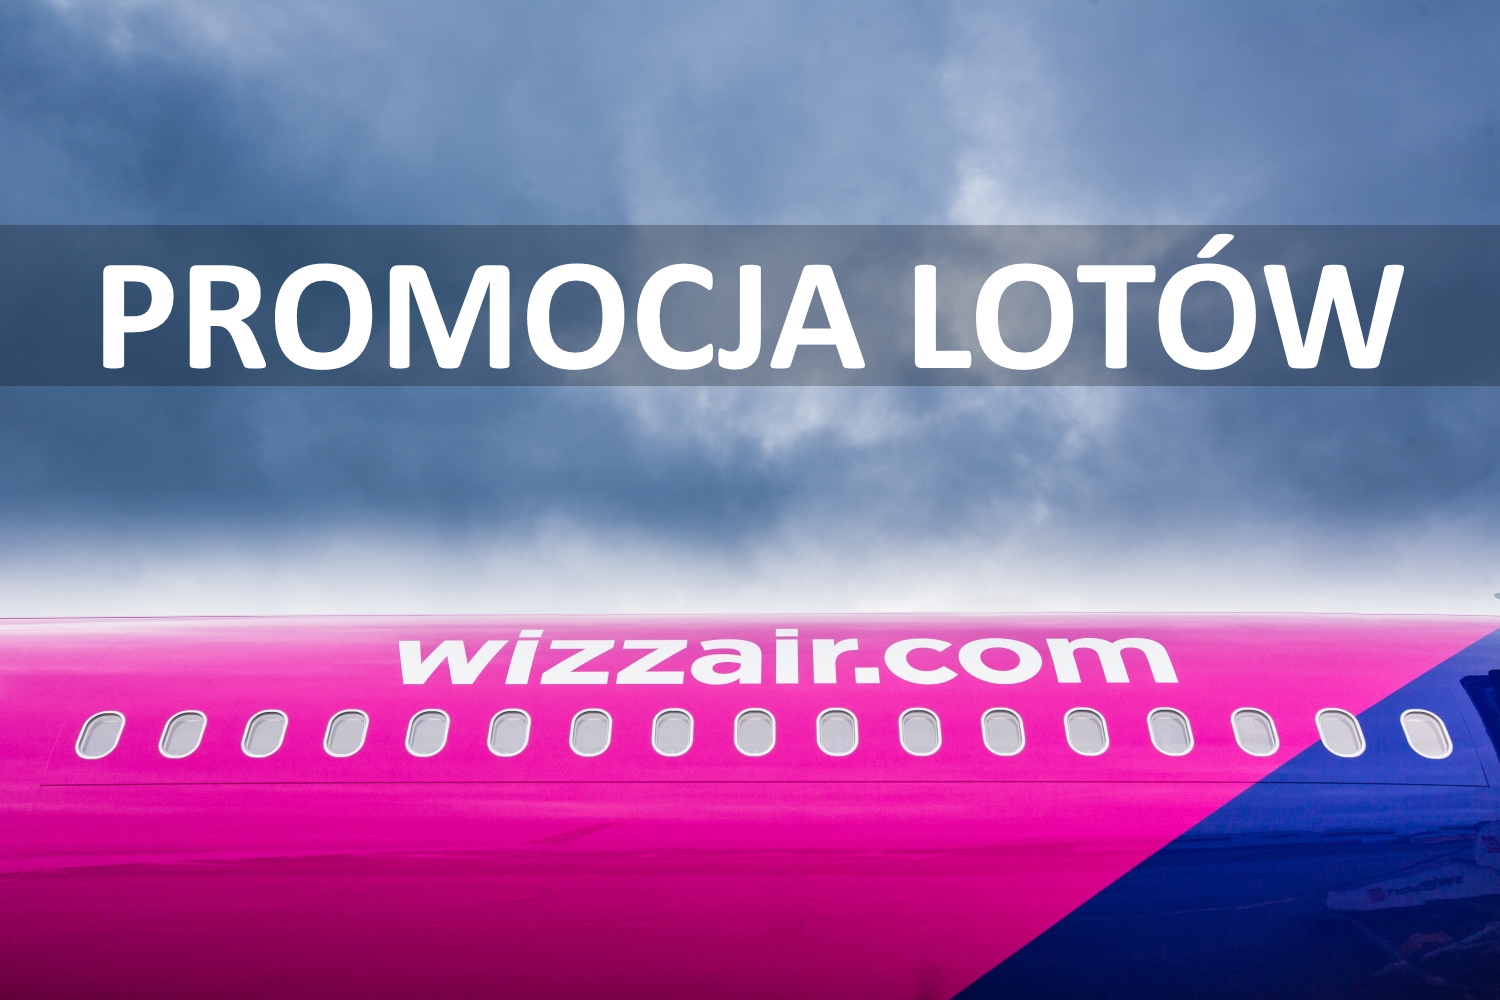 Islandia, Cypr, Barcelona, Malta, Rzym i dużo więcej od 18 PLN w dwie strony. Wyprzedaż Wizz Air!